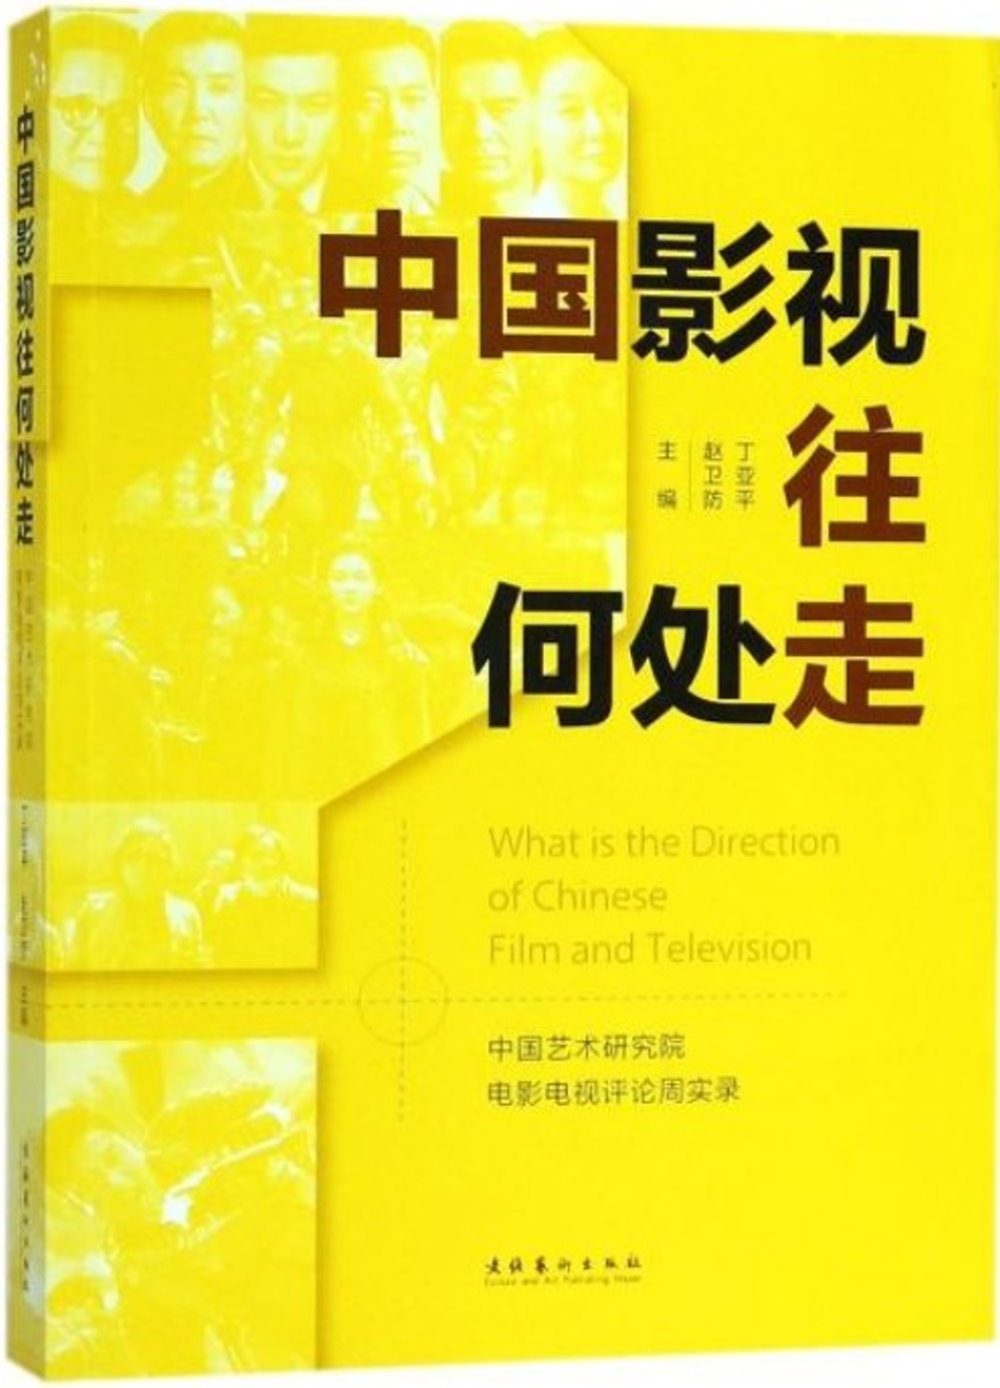 中國影視往何處走：中國藝術研究院電影電視評論周實錄